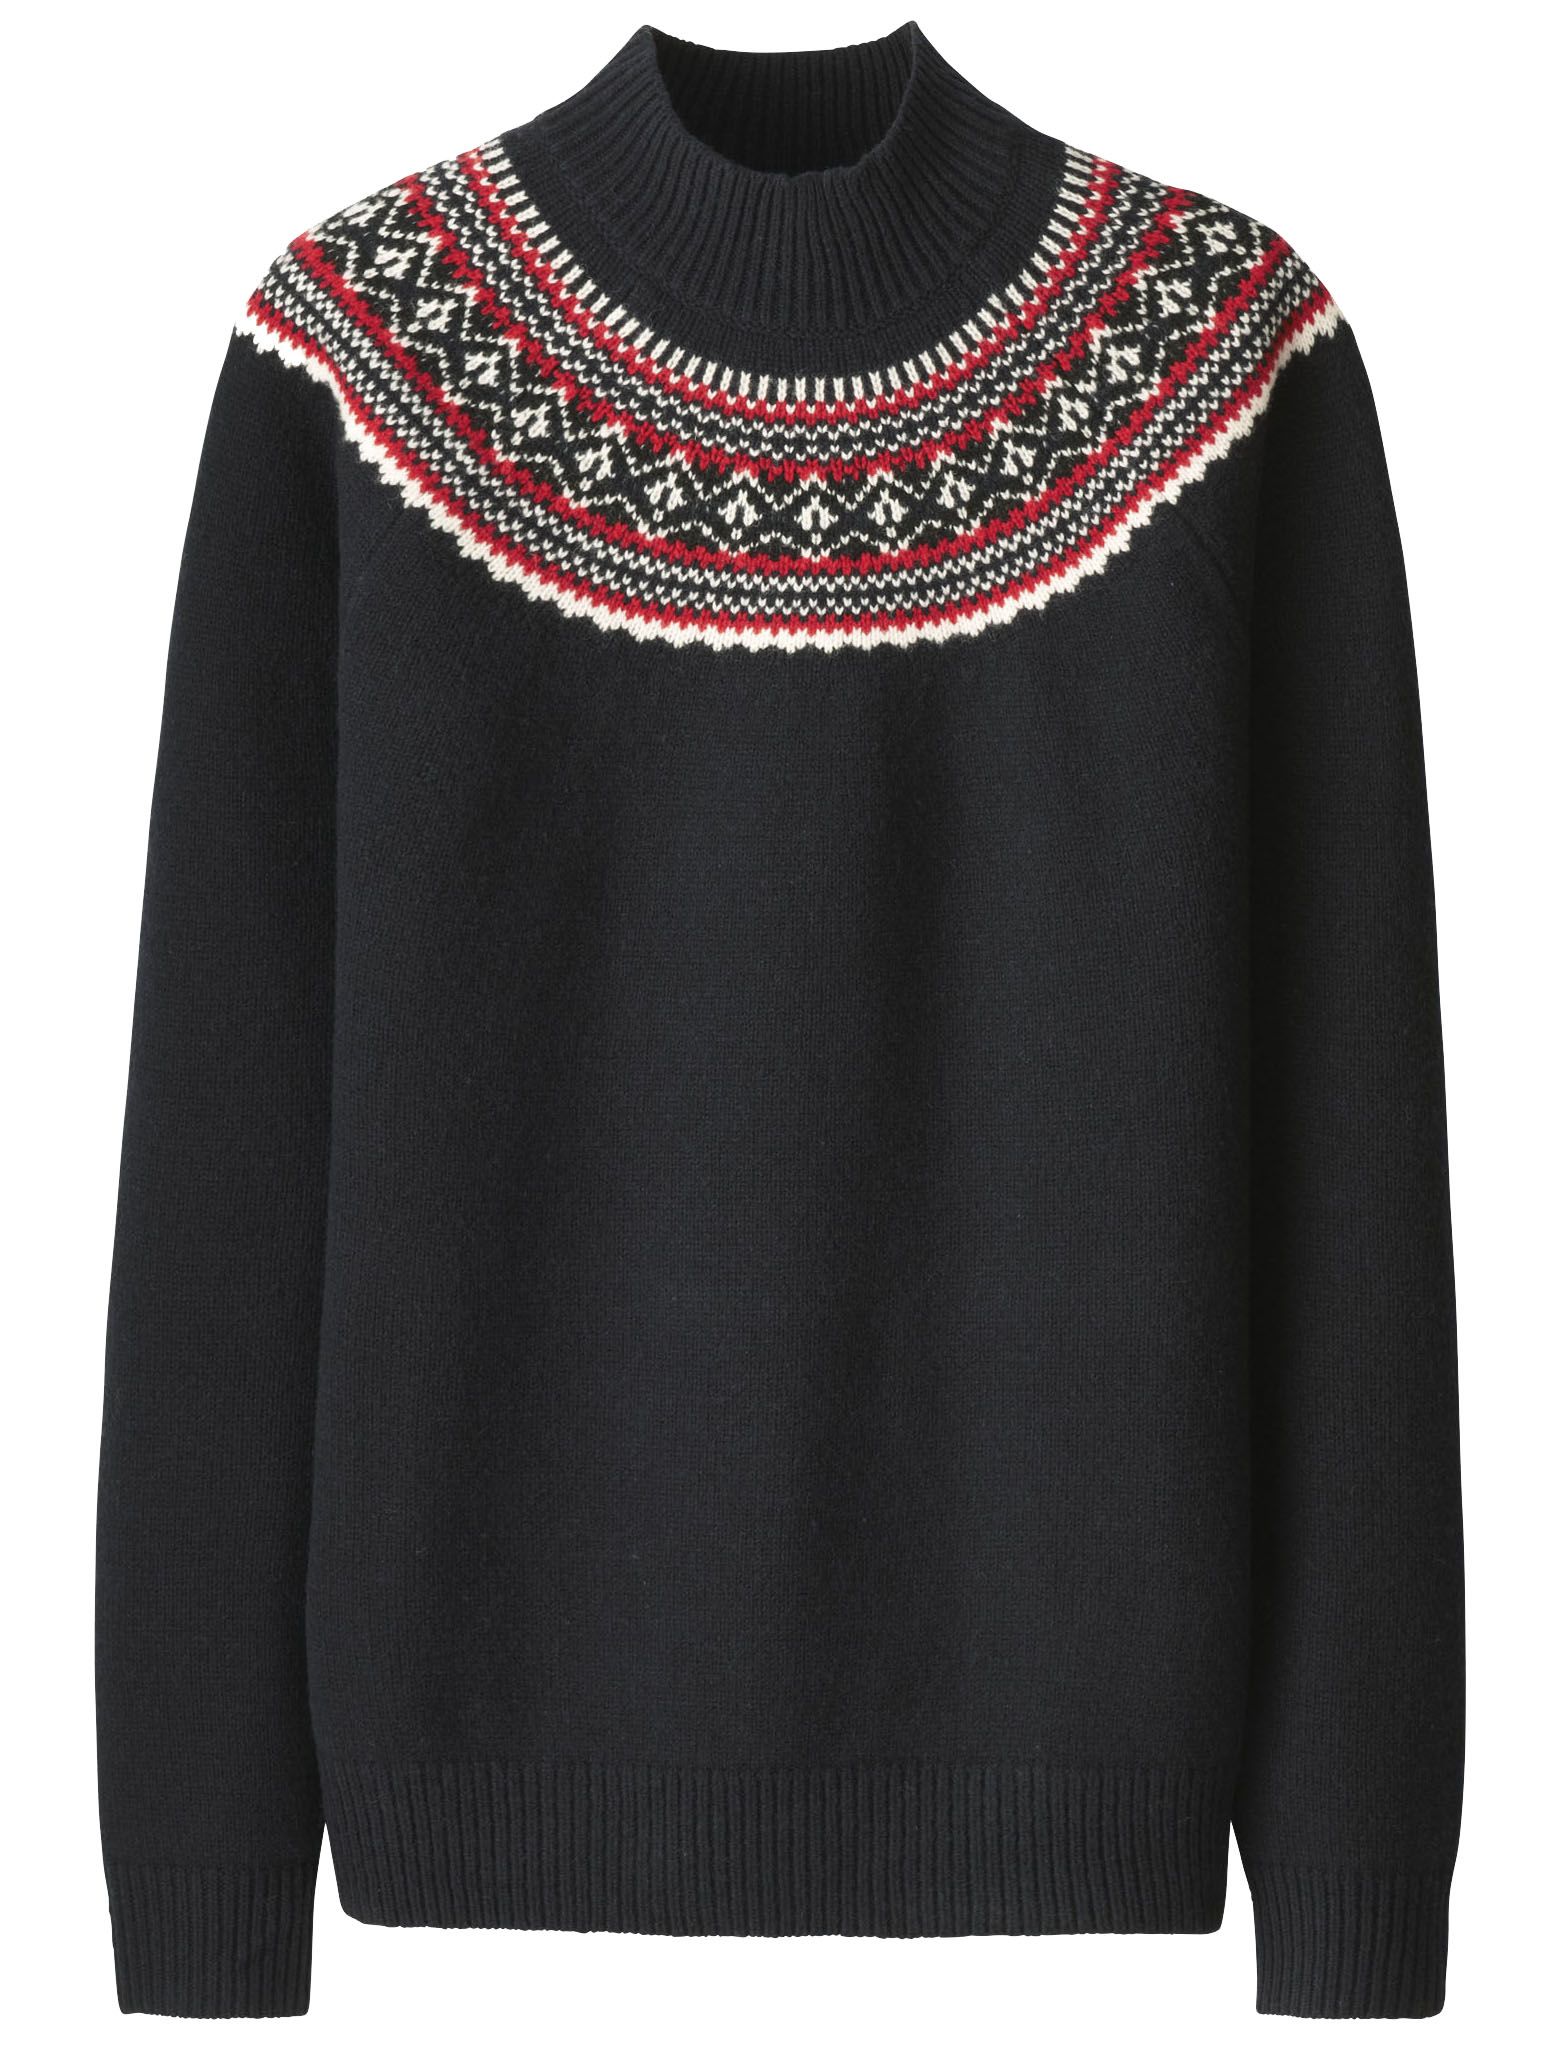 Check styling ideas for「JWA Souffle Yarn Fairisle Sweater、JWA